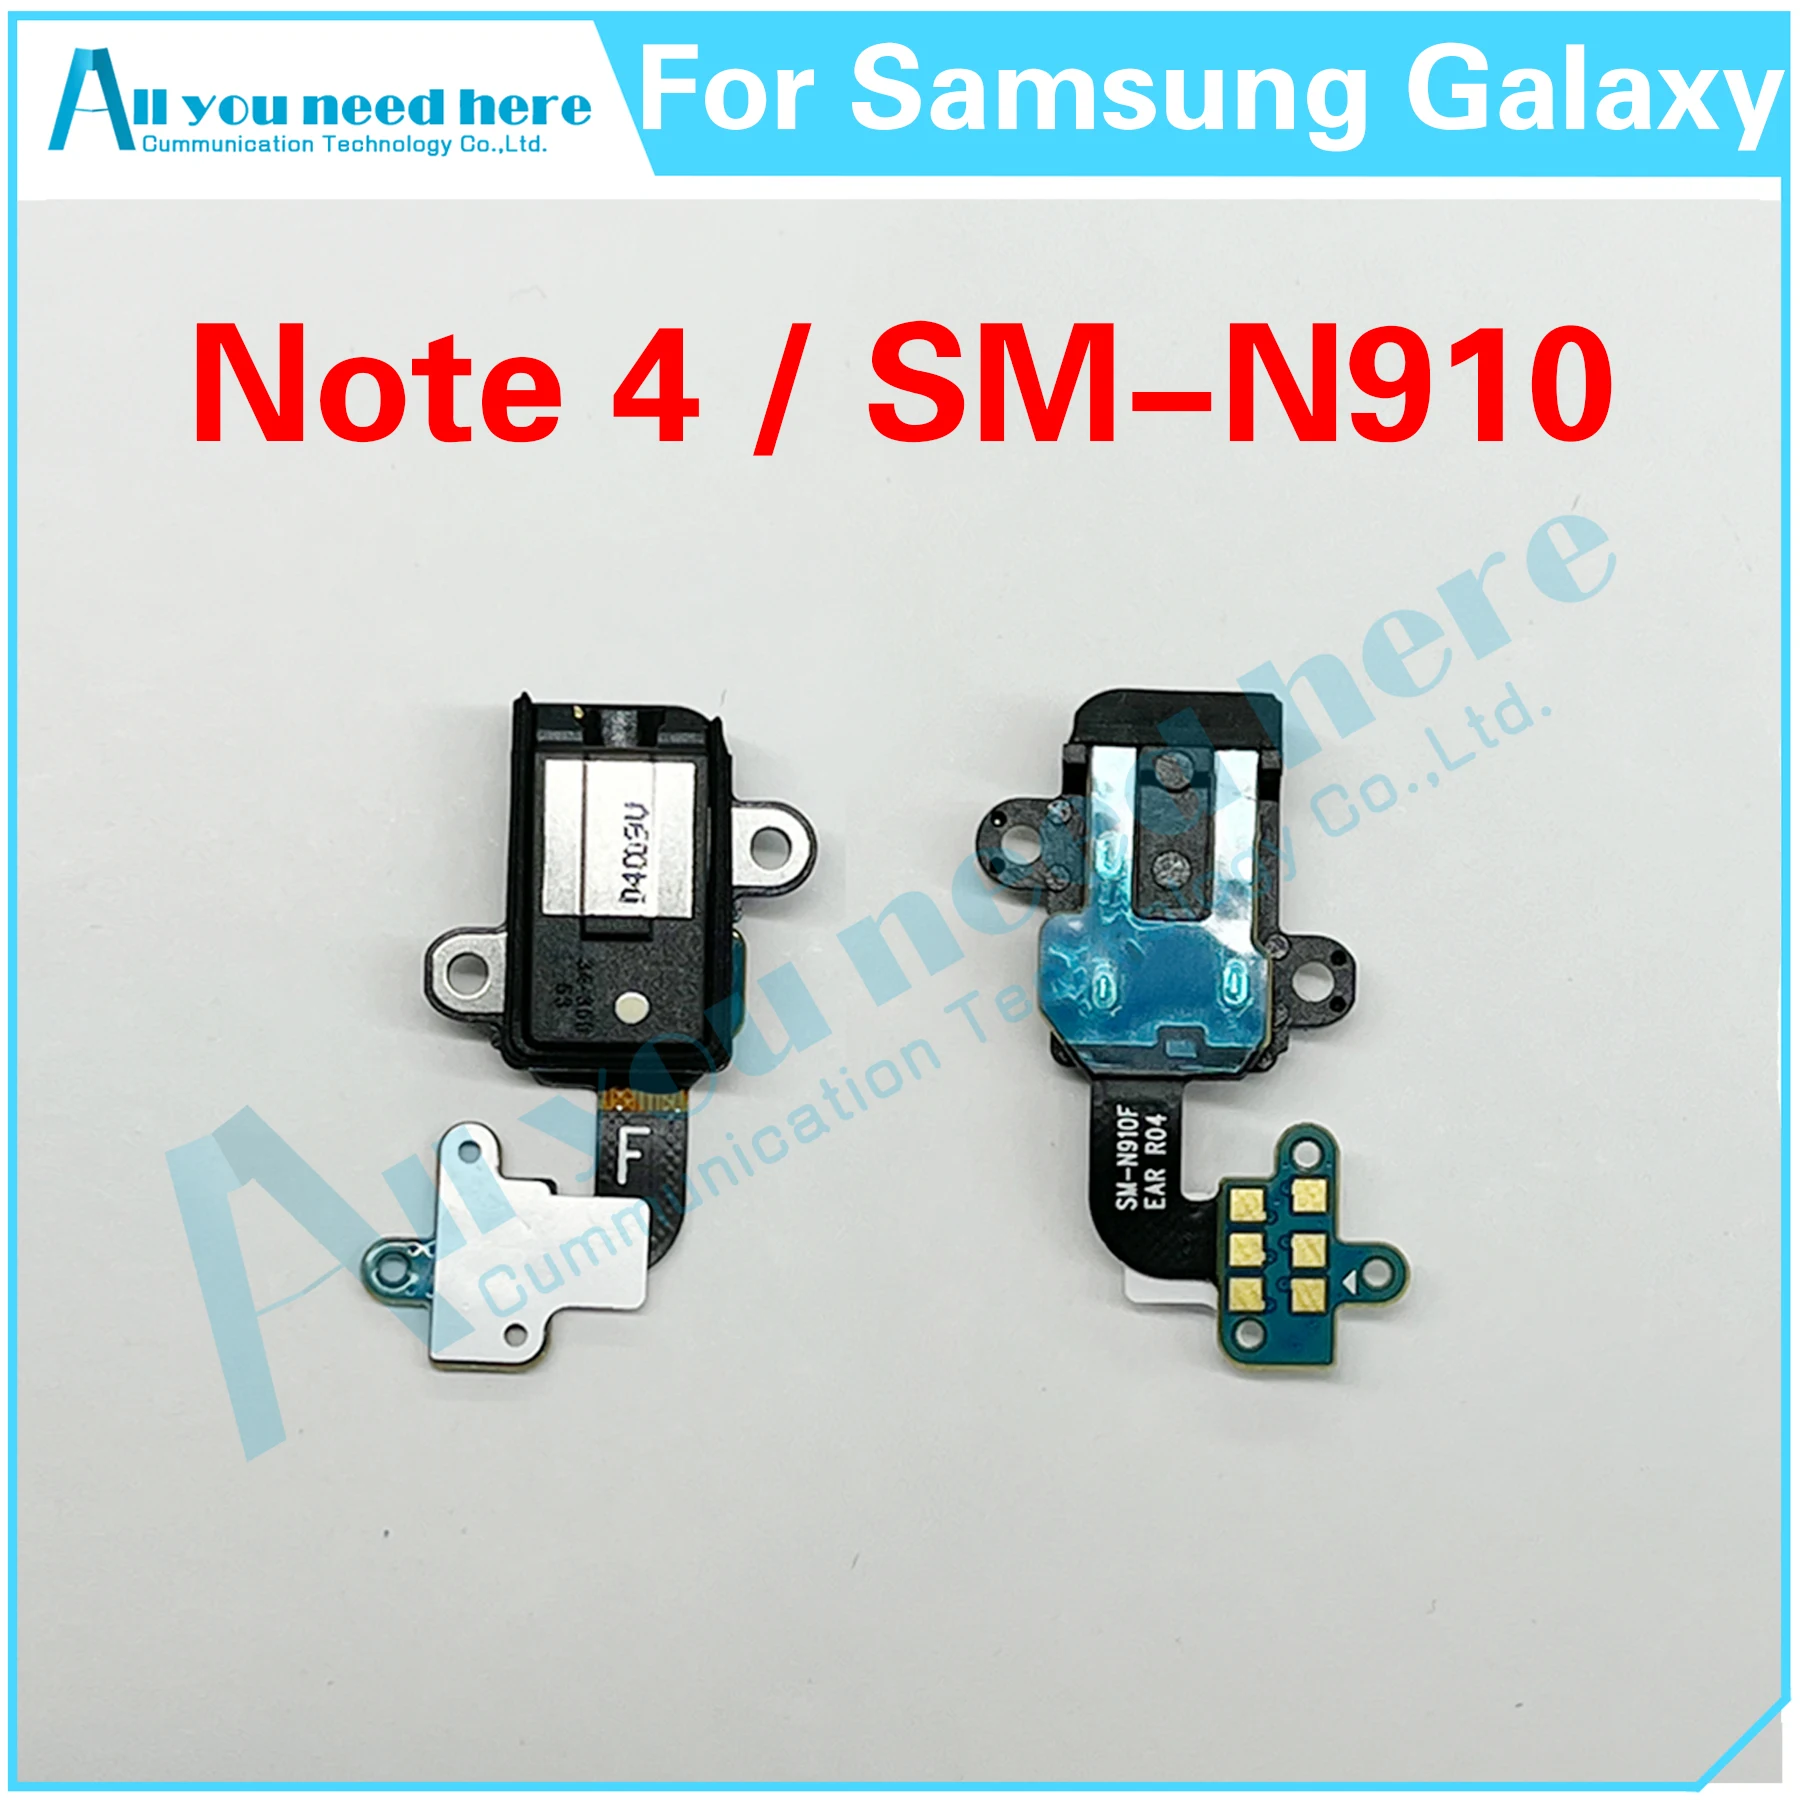 

Аудиоразъем для Samsung Galaxy Note 4 SM-N910 N910 N910F N910S N910C N910H N910G N910U Note4 аудиоразъем для наушников гибкий кабель